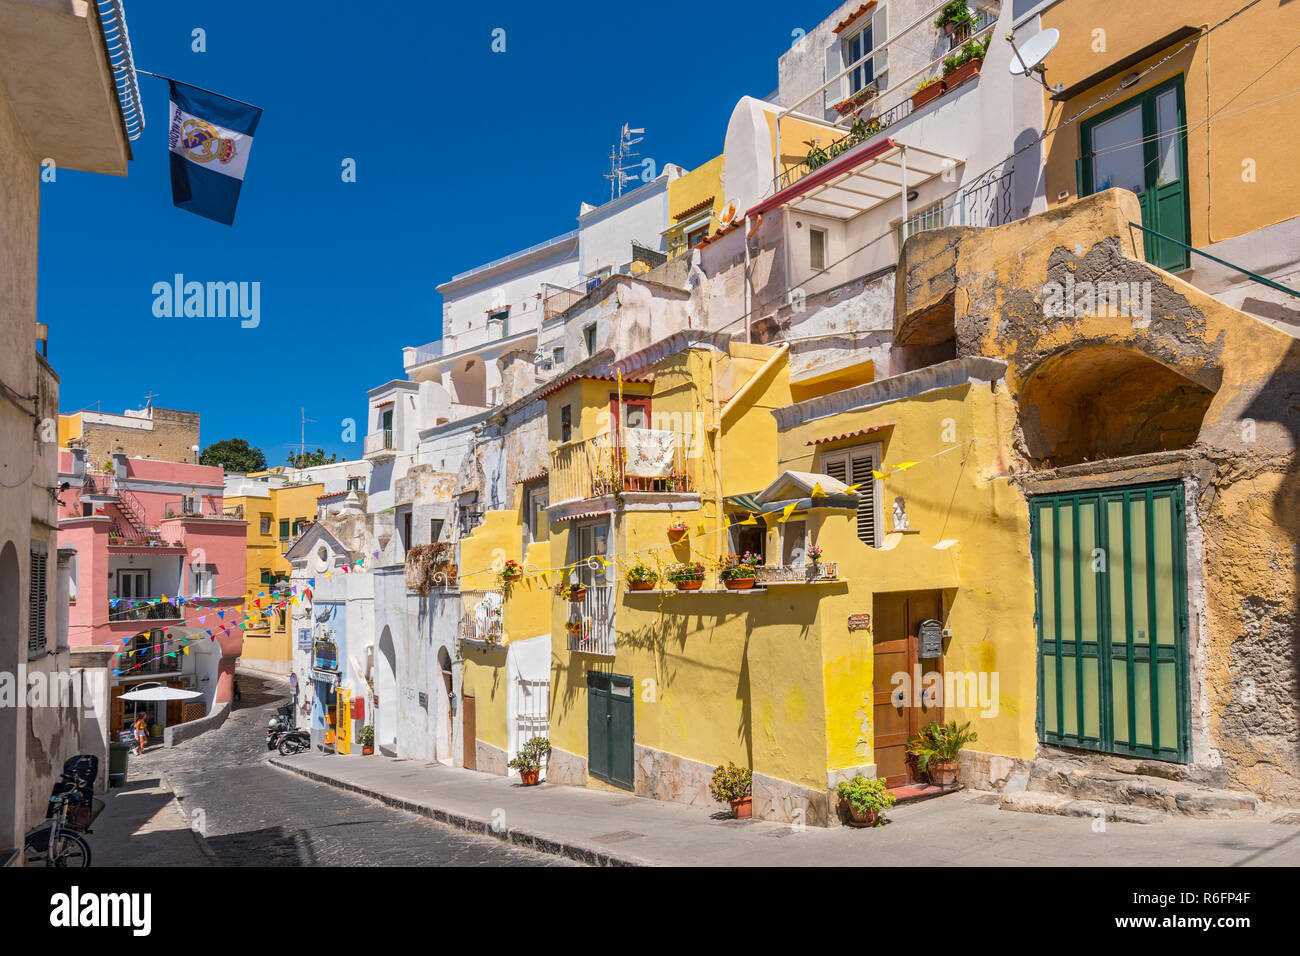 Farbenfrohe Gebäude in der Via S Rocco Street, Insel Procida, die Bucht von Neapel in Süditalien Stockfoto